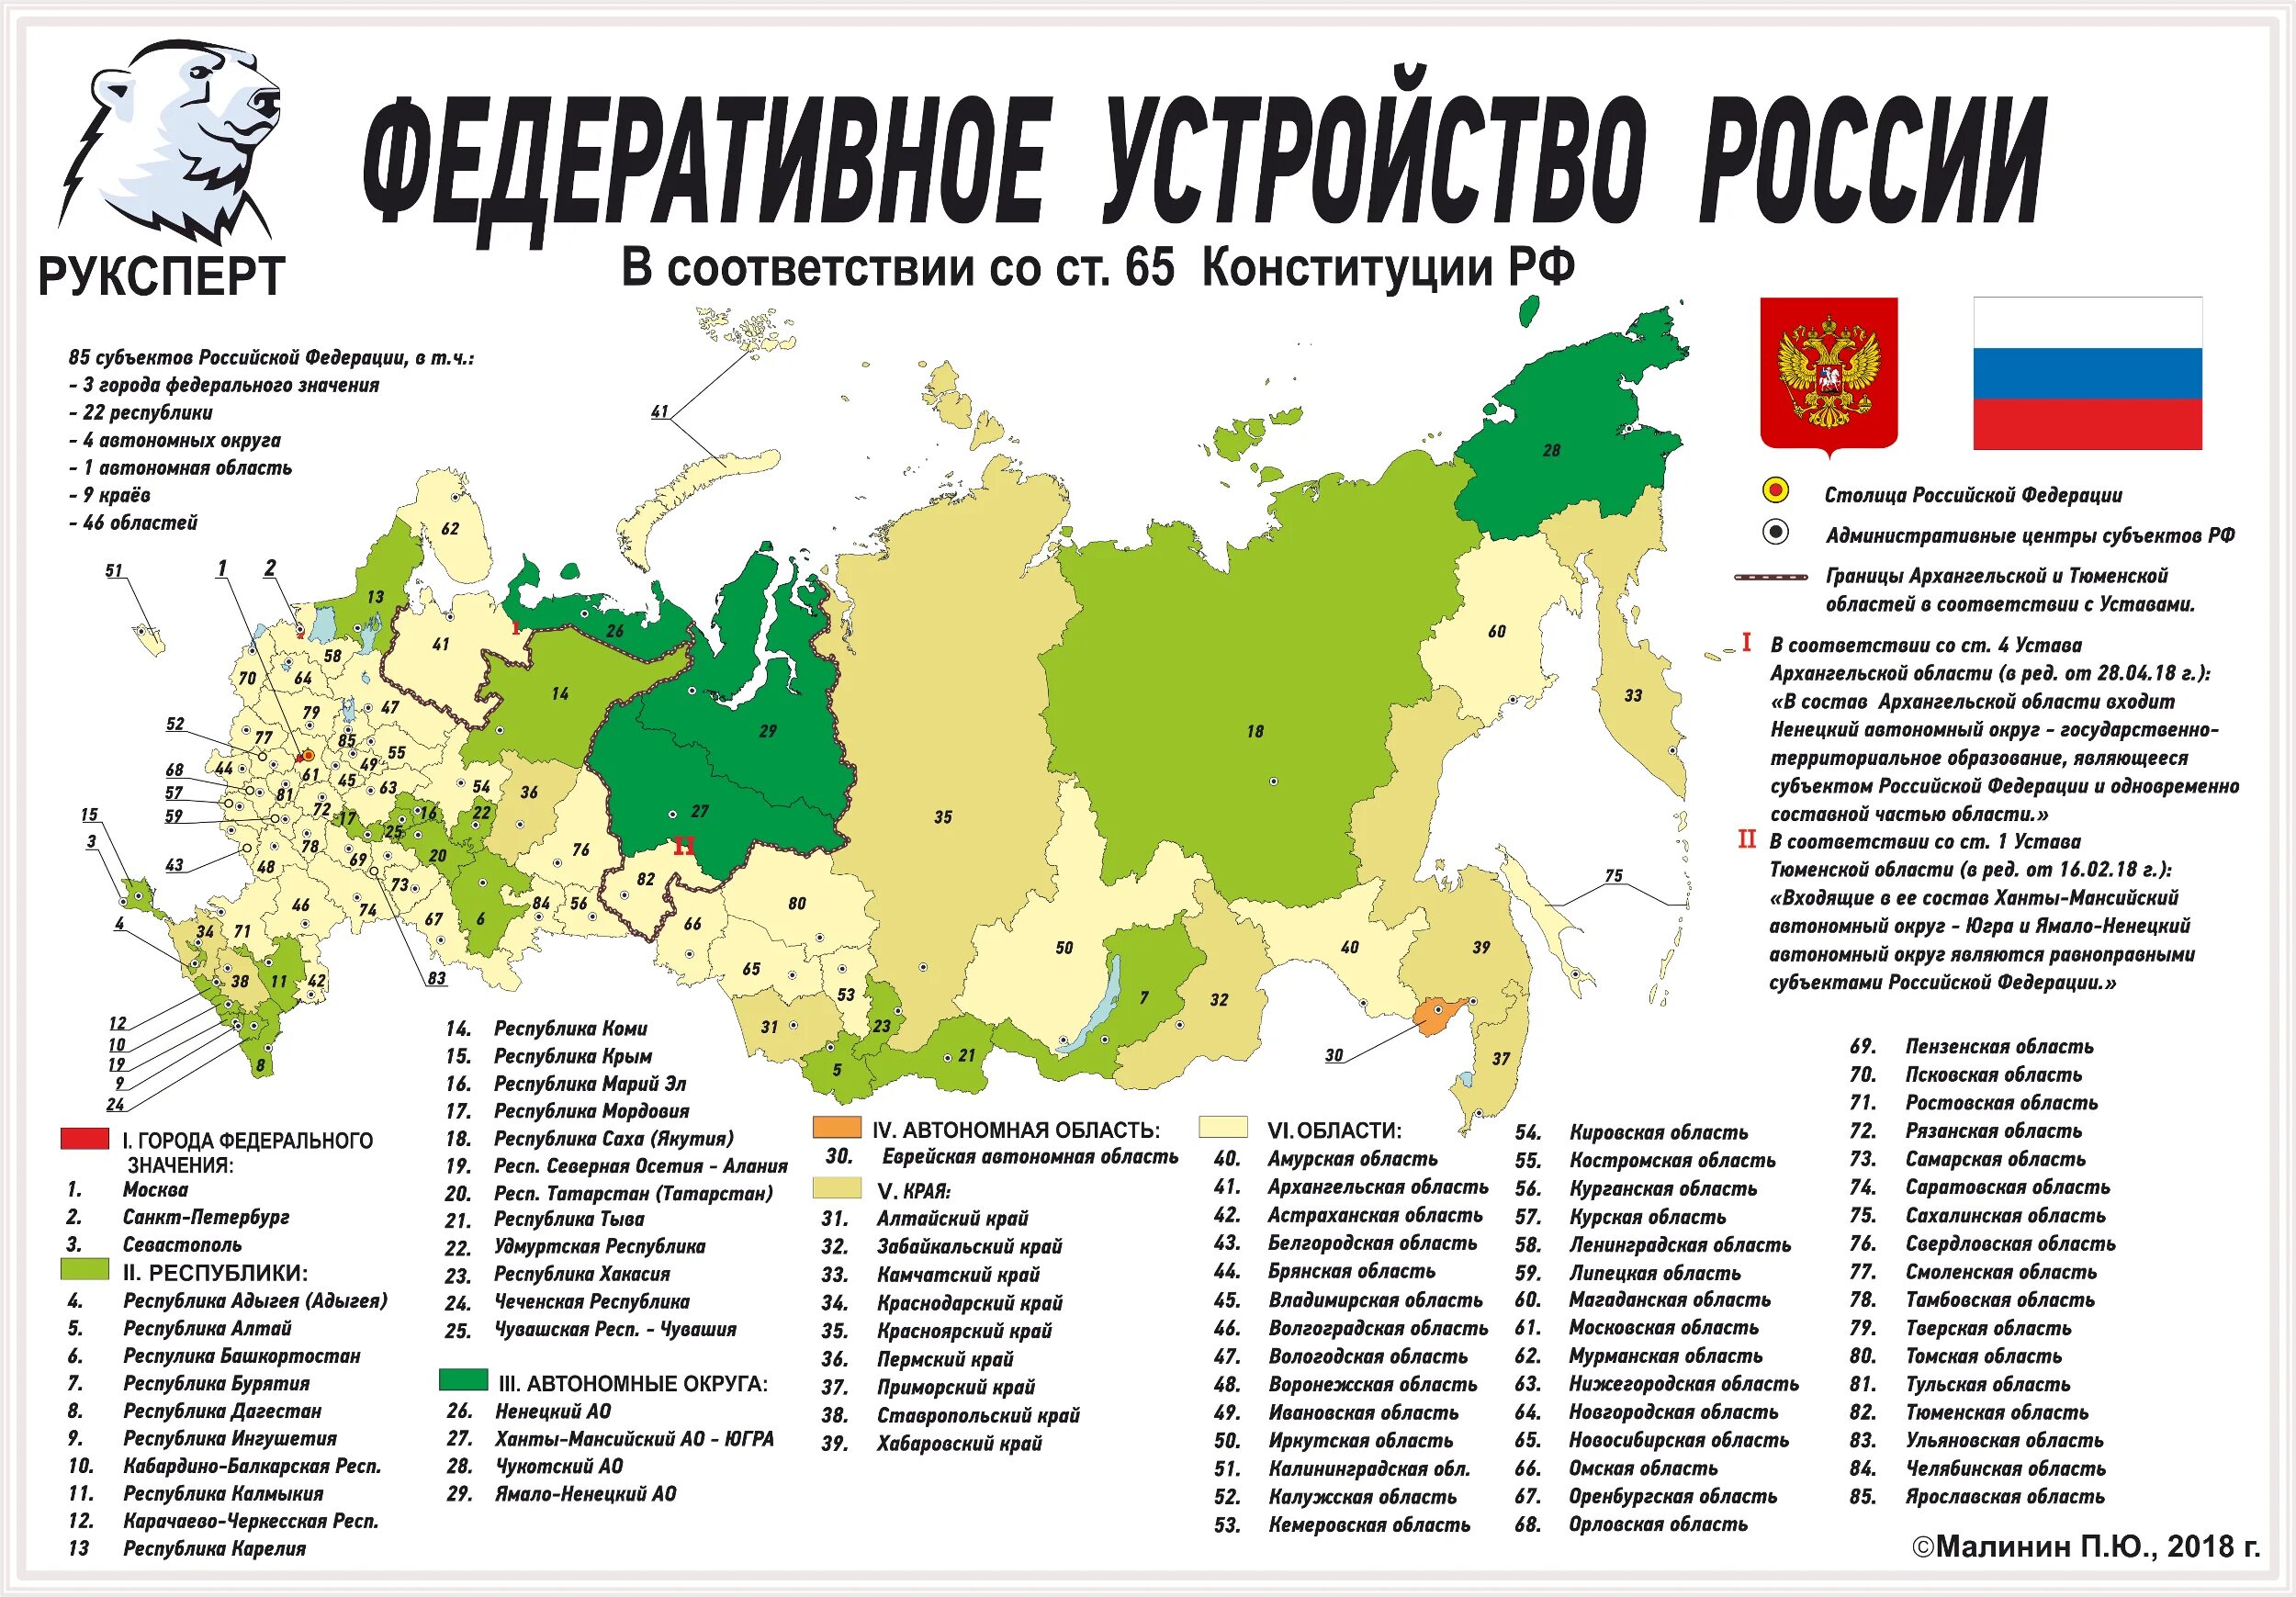 Сколько субъектов включает территория российской федерации